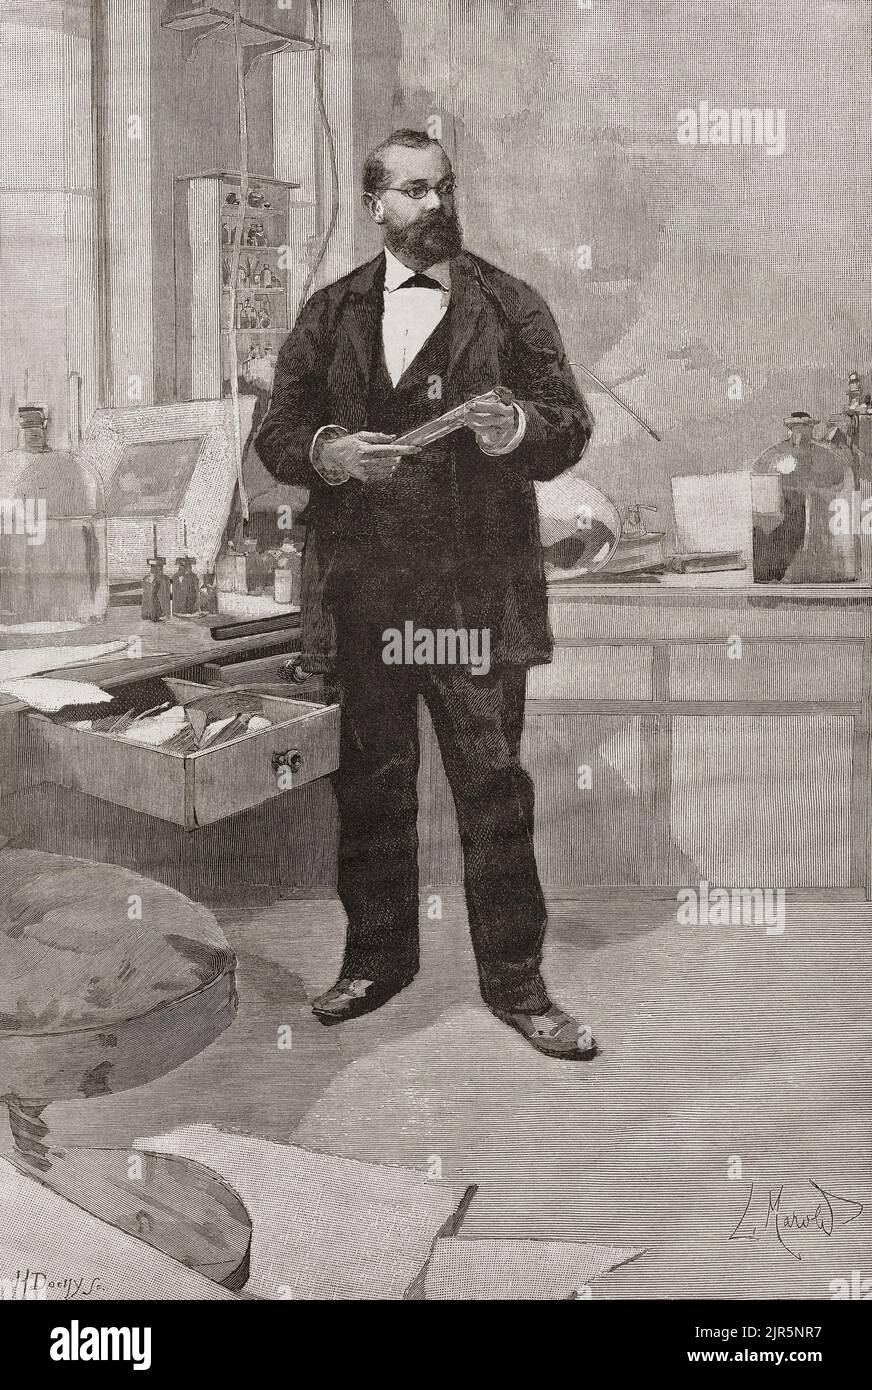 Heinrich Hermann Robert Koch, 1843 – 1910. Medico e microbiologo tedesco. Robert Koch è stato insignito del Premio Nobel per la fisiologia o la medicina nel 1905. Visto nel suo laboratorio in questa illustrazione del 19th ° secolo. Foto Stock